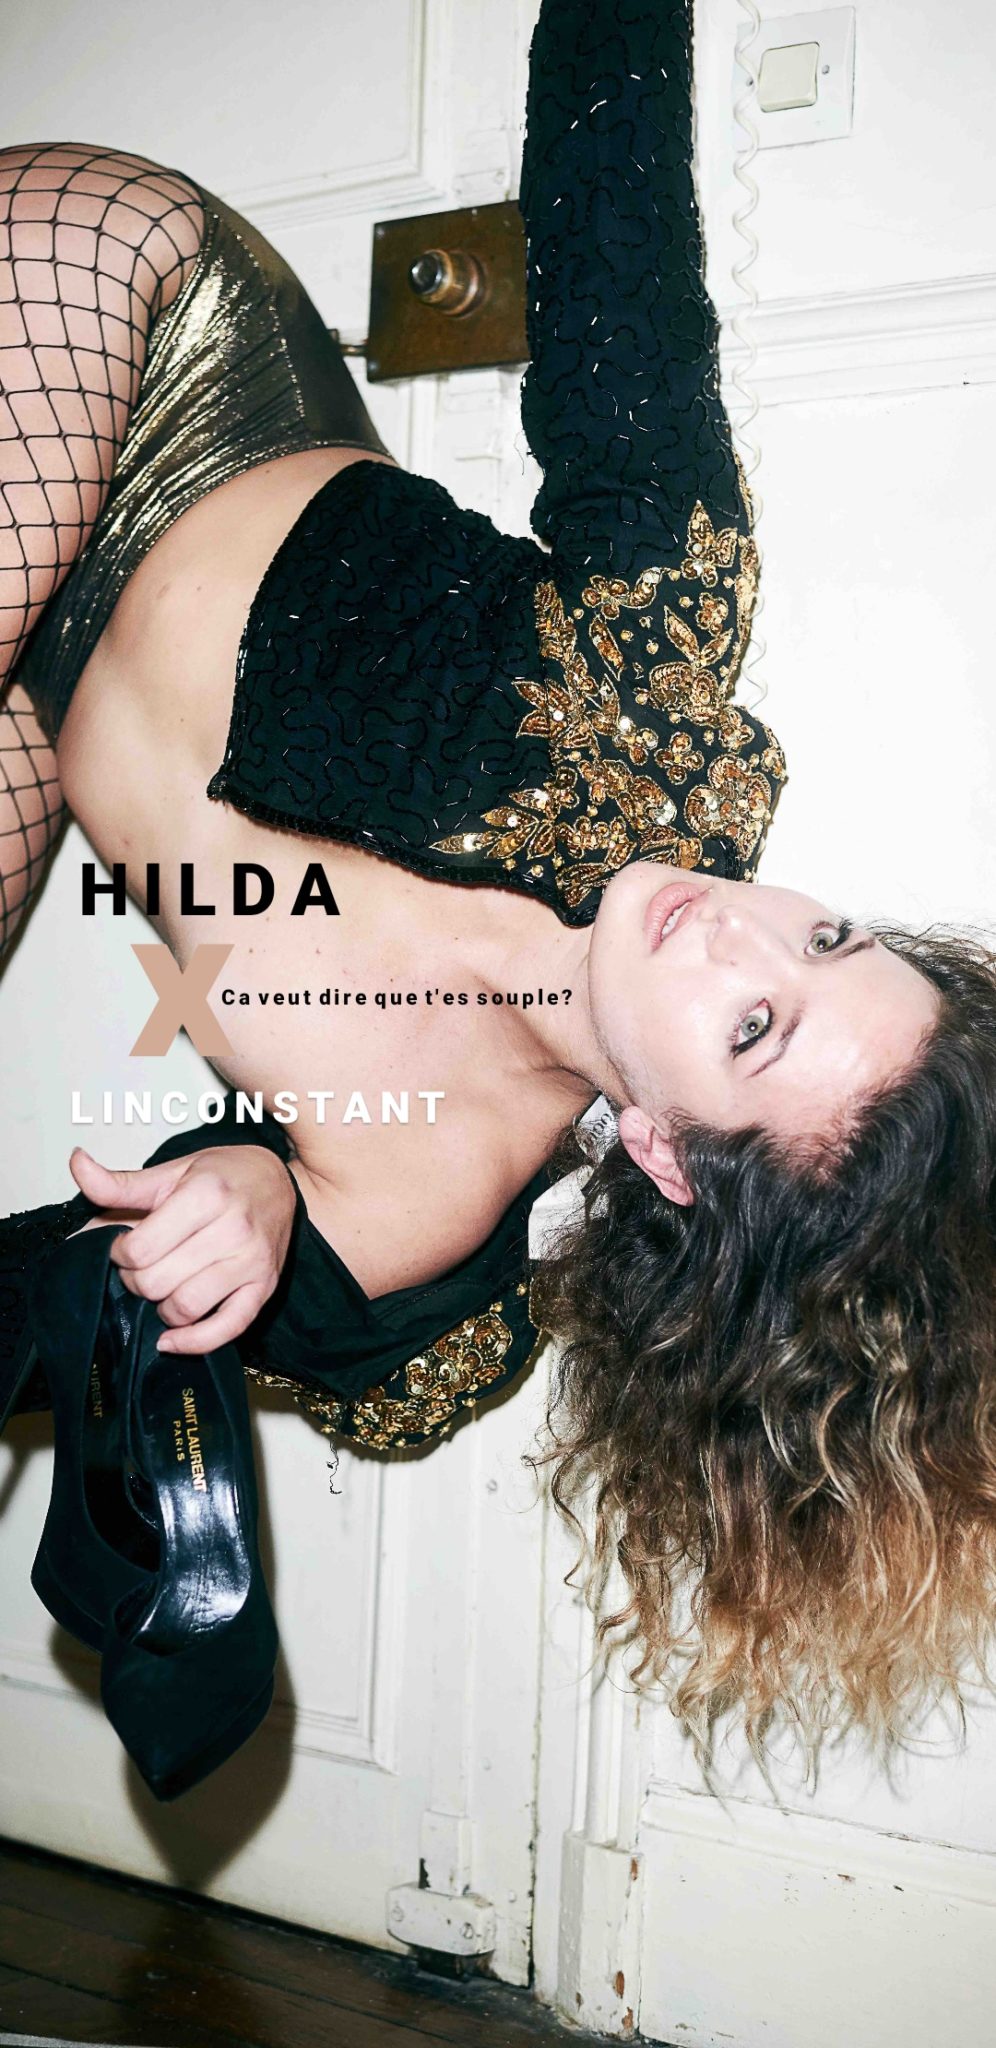 Hilda et l'inconstant magazine, première